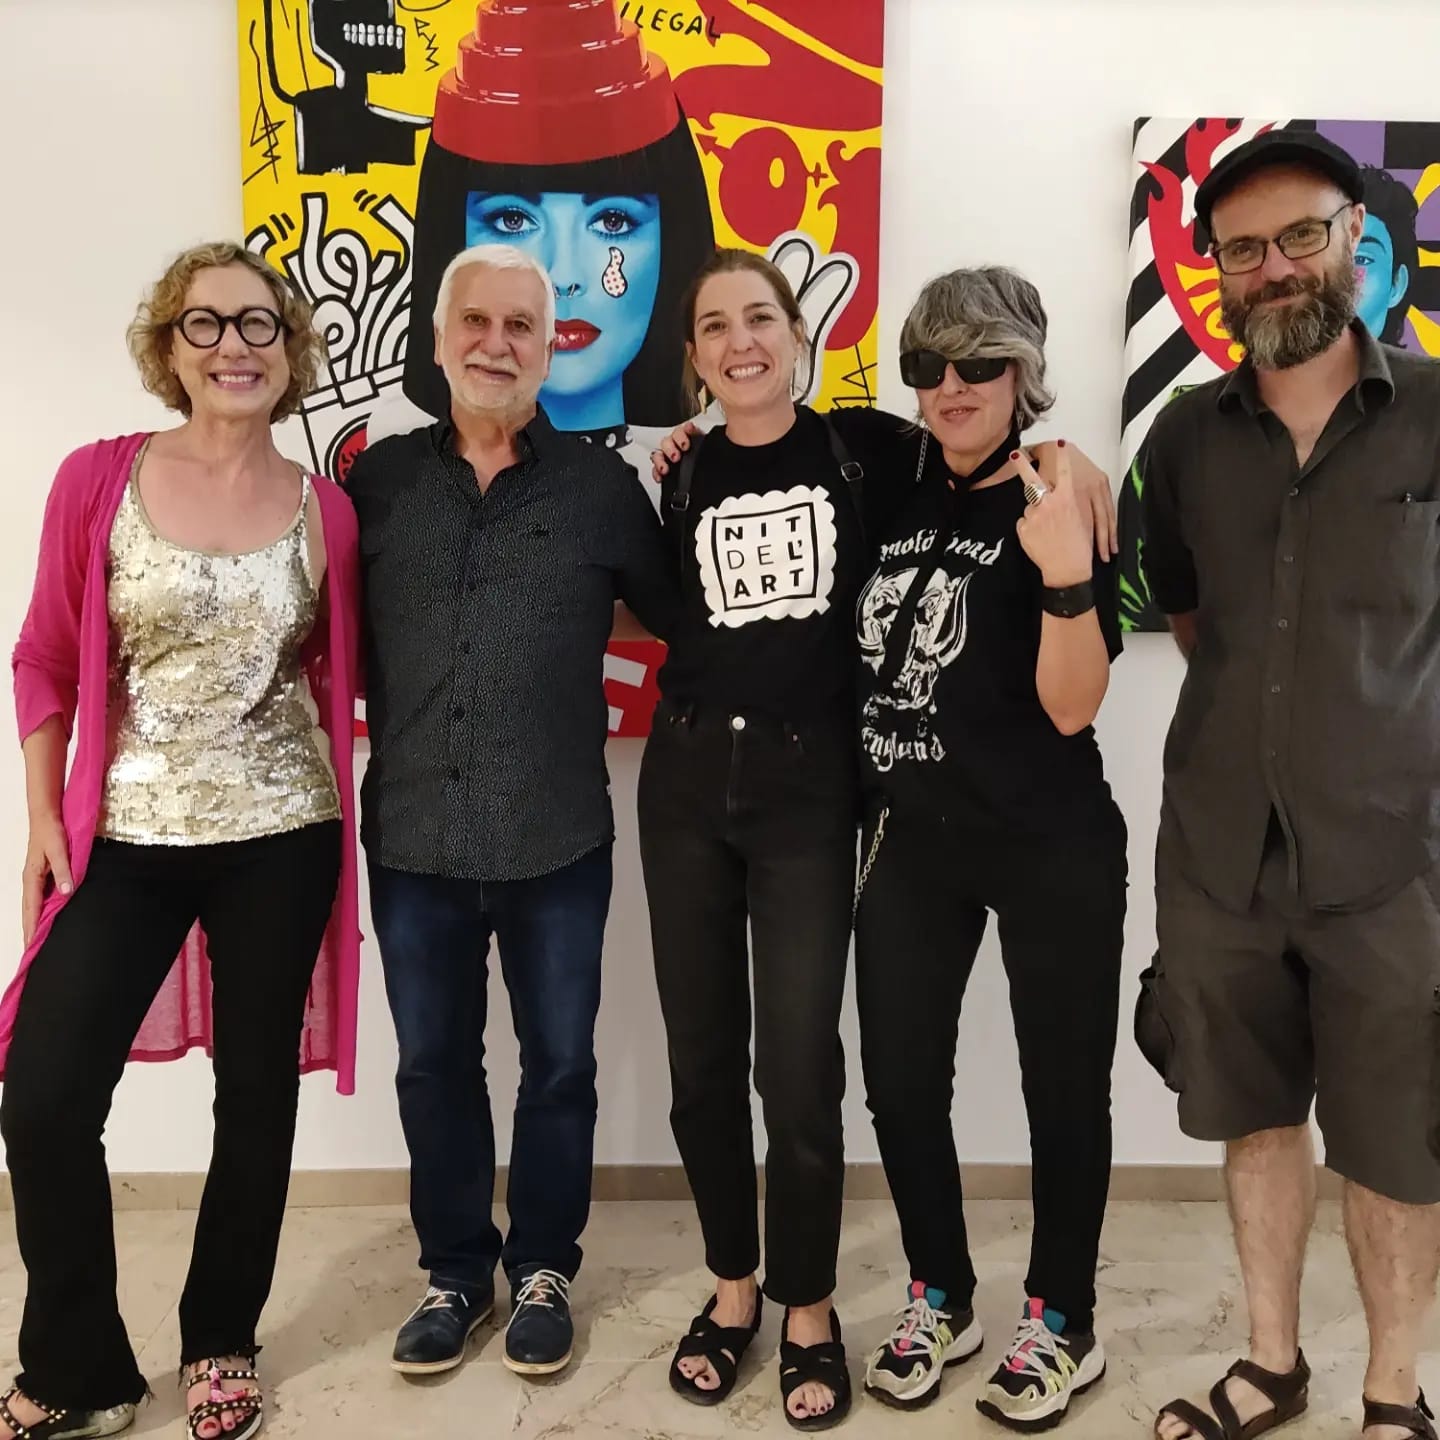 La Nit del Art ensenya els tallers dels artistes locals i inaugura l’exposició ‘Supercolors’ en col·laboració amb l’Ajuntament de Castelló